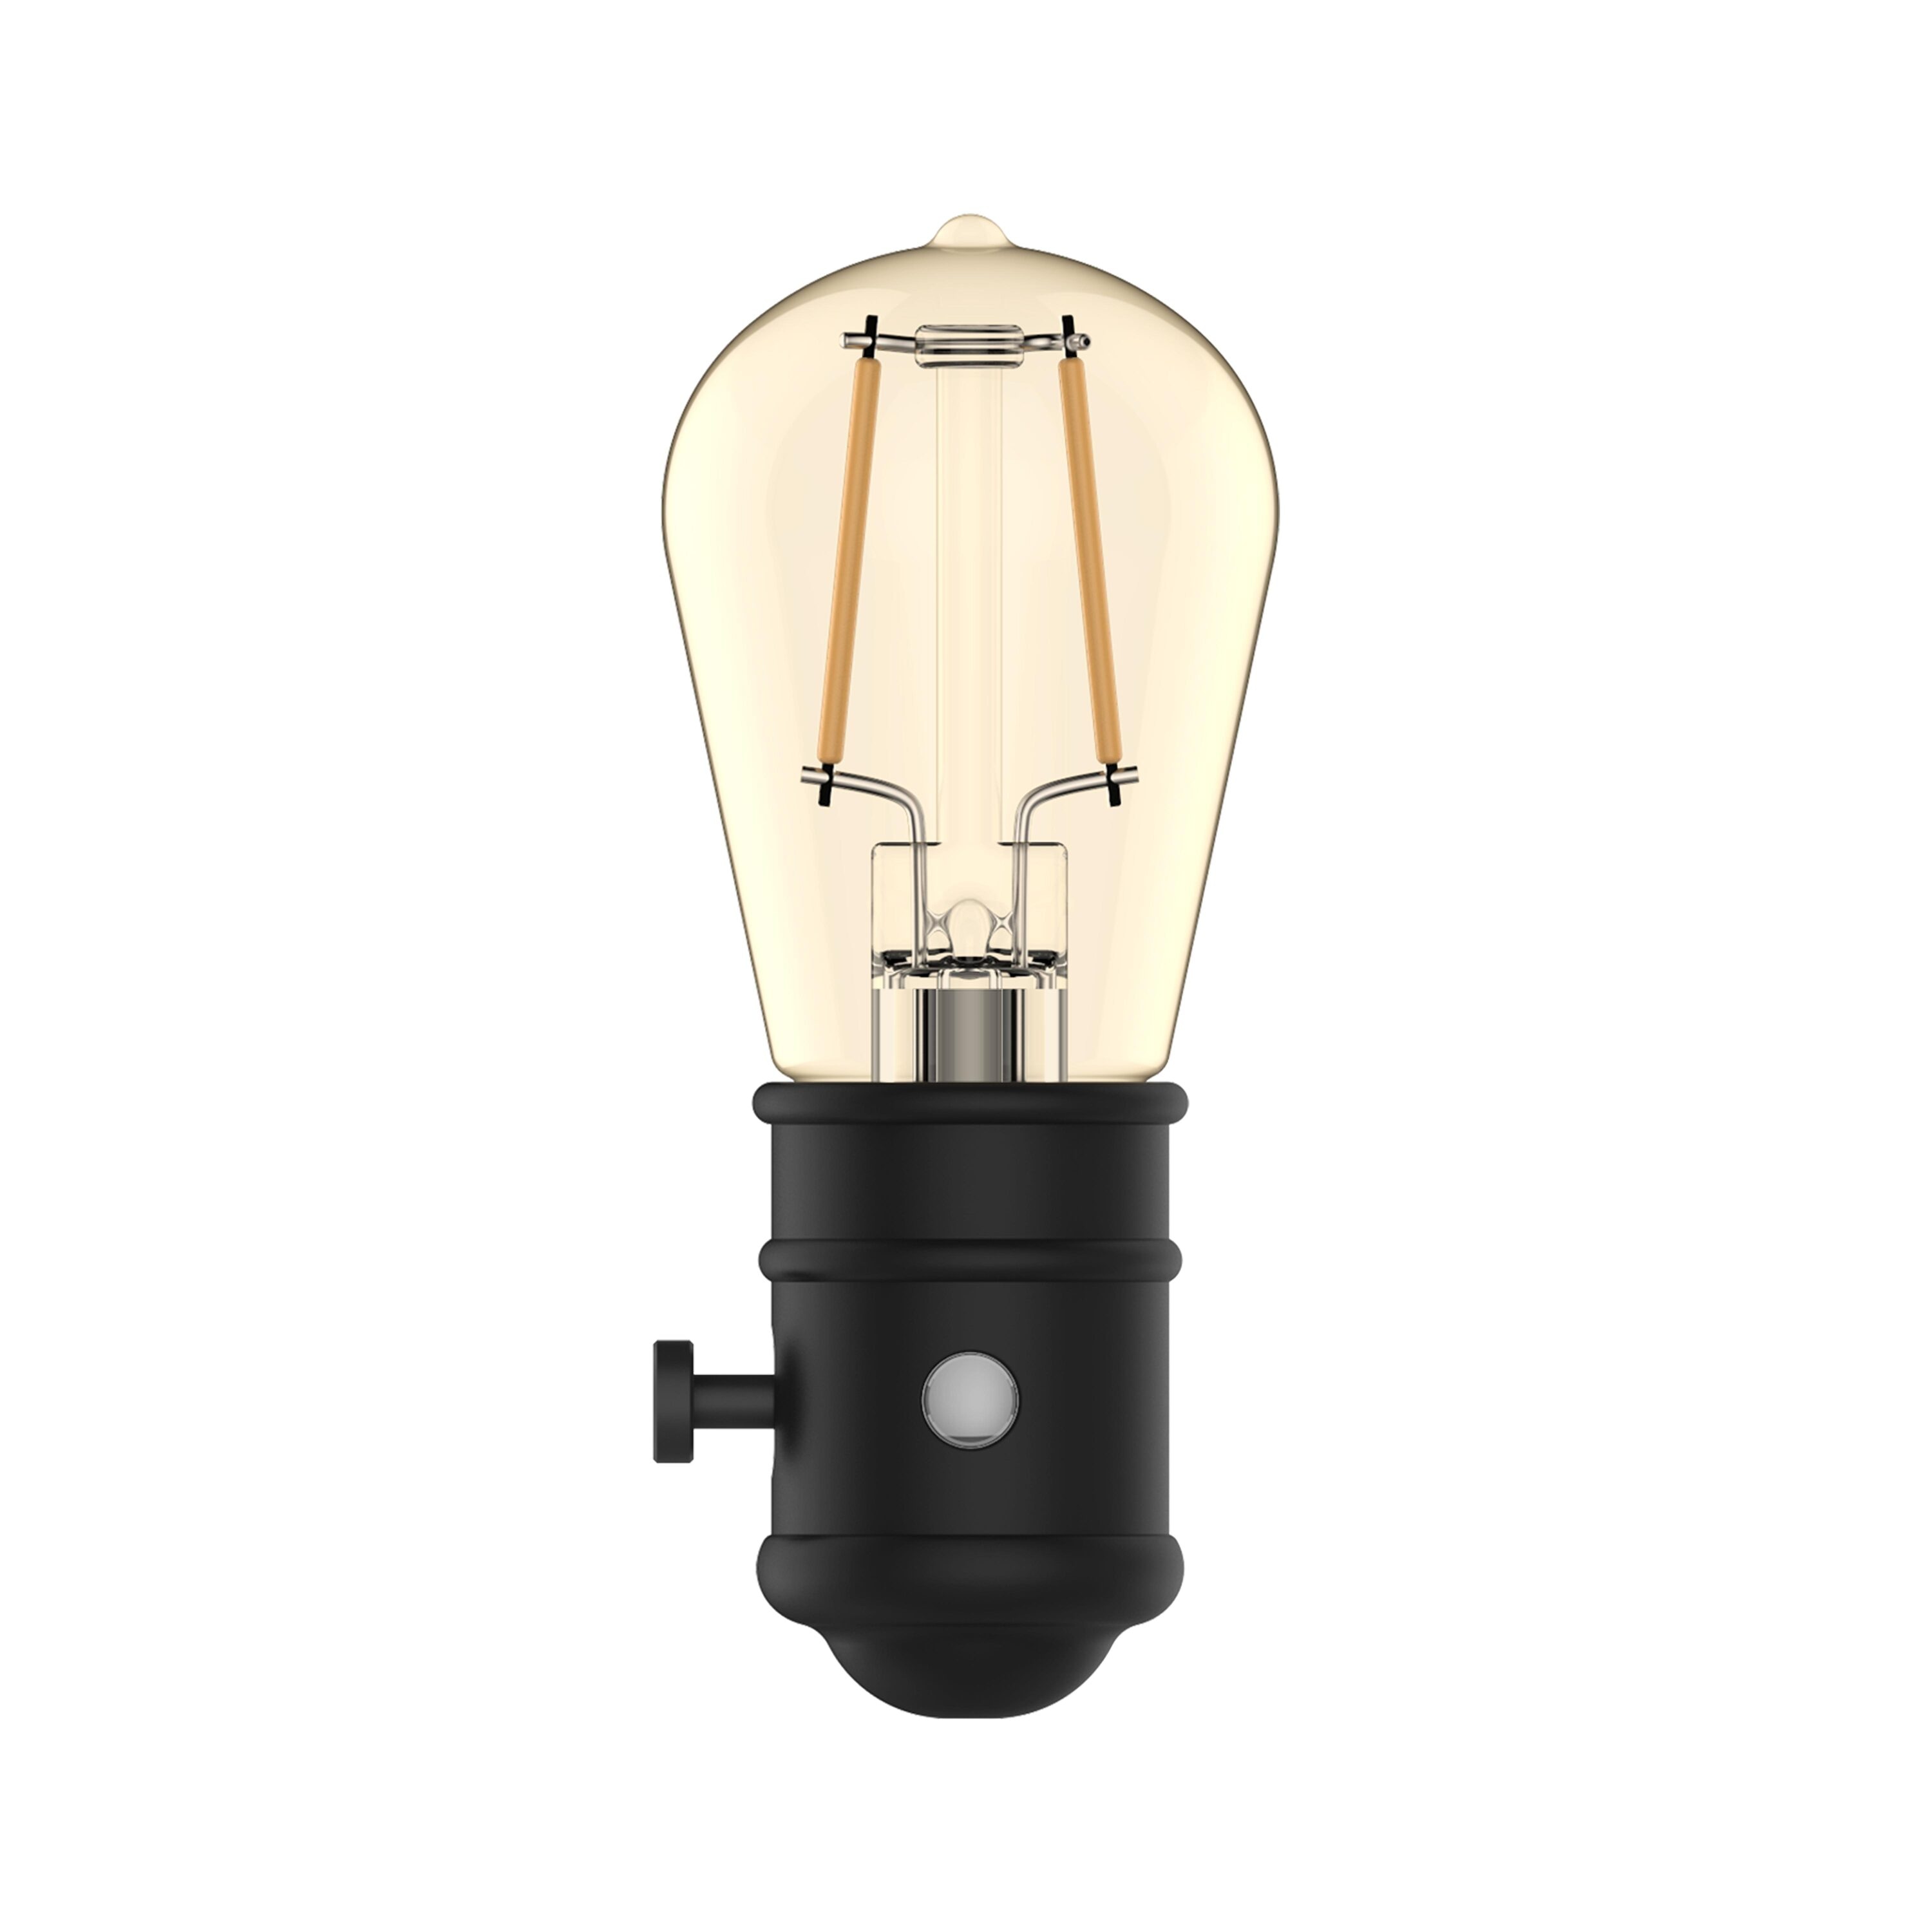 LED NIGHT LIGHT BULB  RETRO FAUCET LAMP — Times Int'l Trading Co